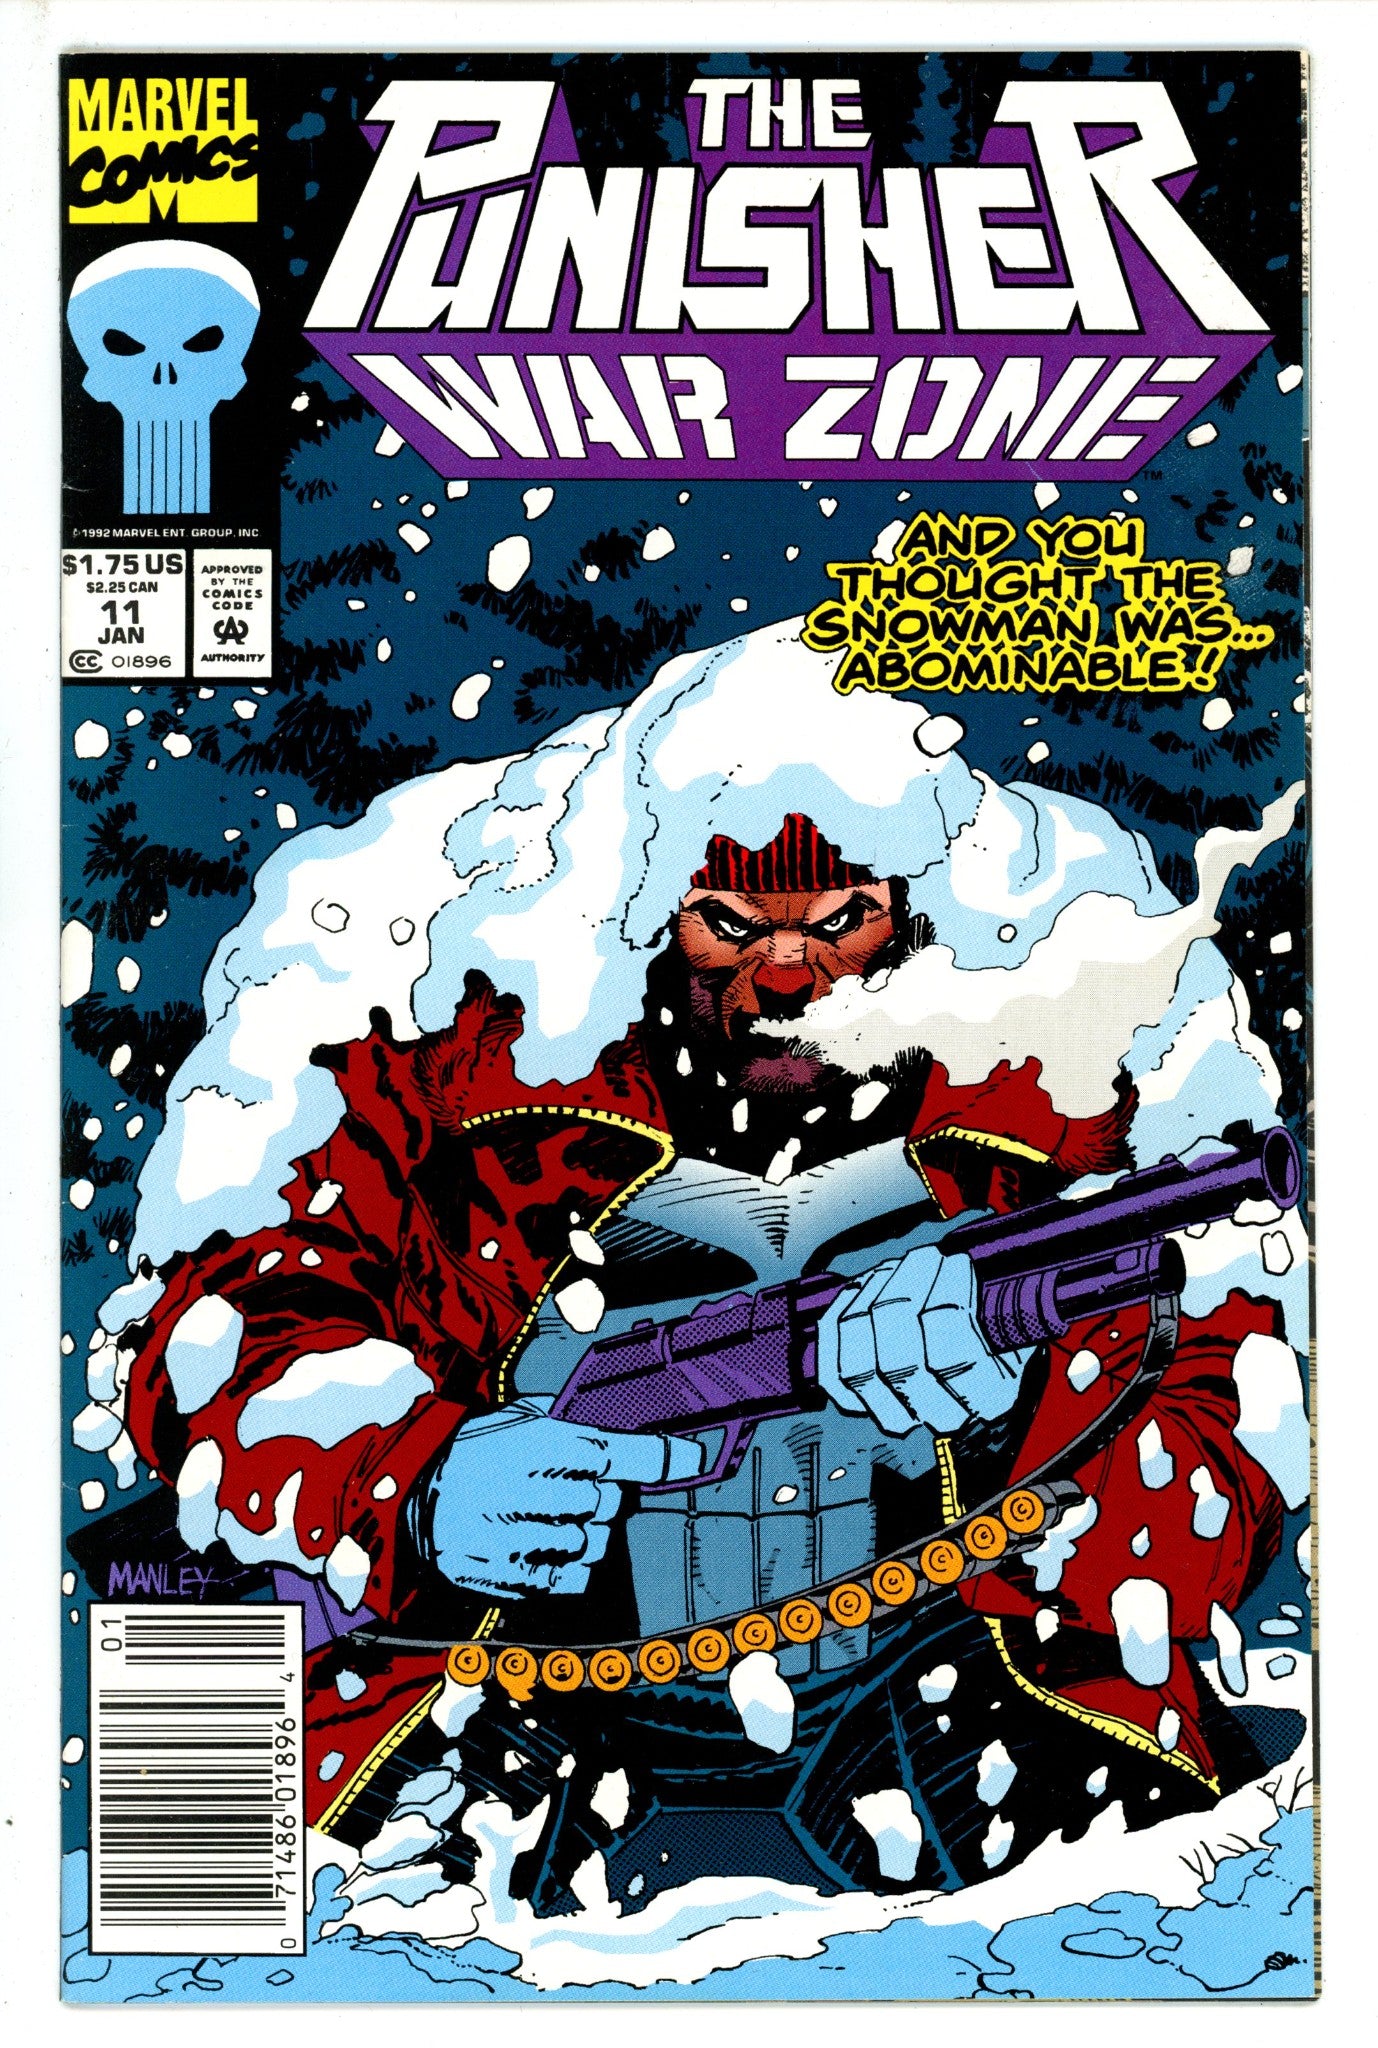 The Punisher: War Zone Vol 1 11 Newsstand (1992)